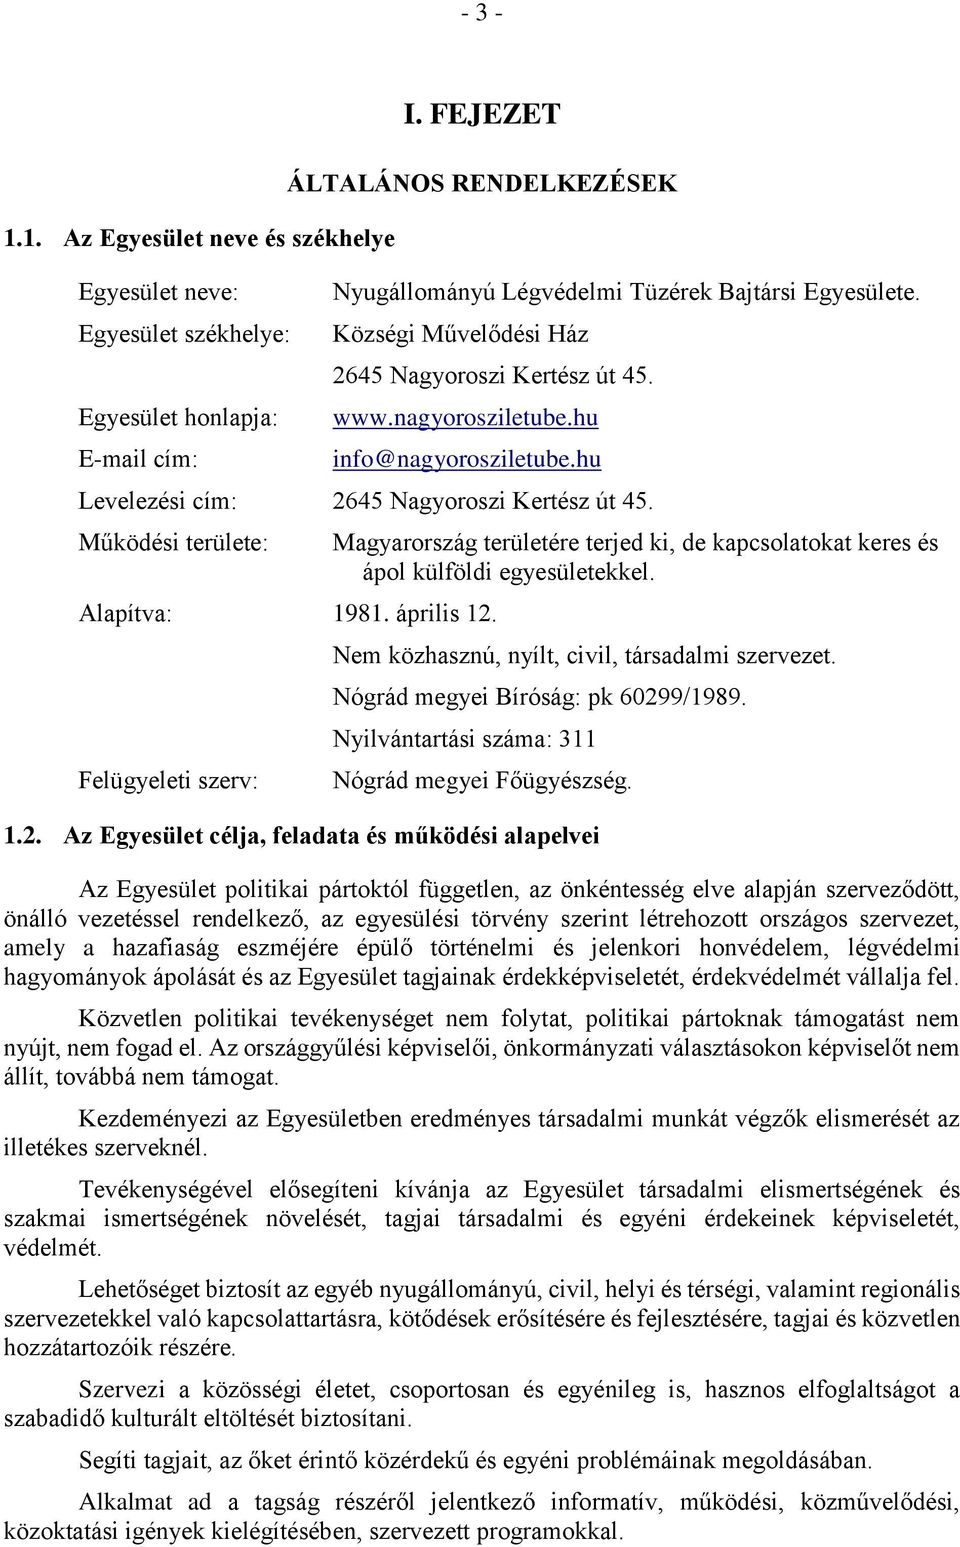 Felügyeleti szerv: Magyarország területére terjed ki, de kapcsolatokat keres és ápol külföldi egyesületekkel. Nem közhasznú, nyílt, civil, társadalmi szervezet. Nógrád megyei Bíróság: pk 60299/1989.